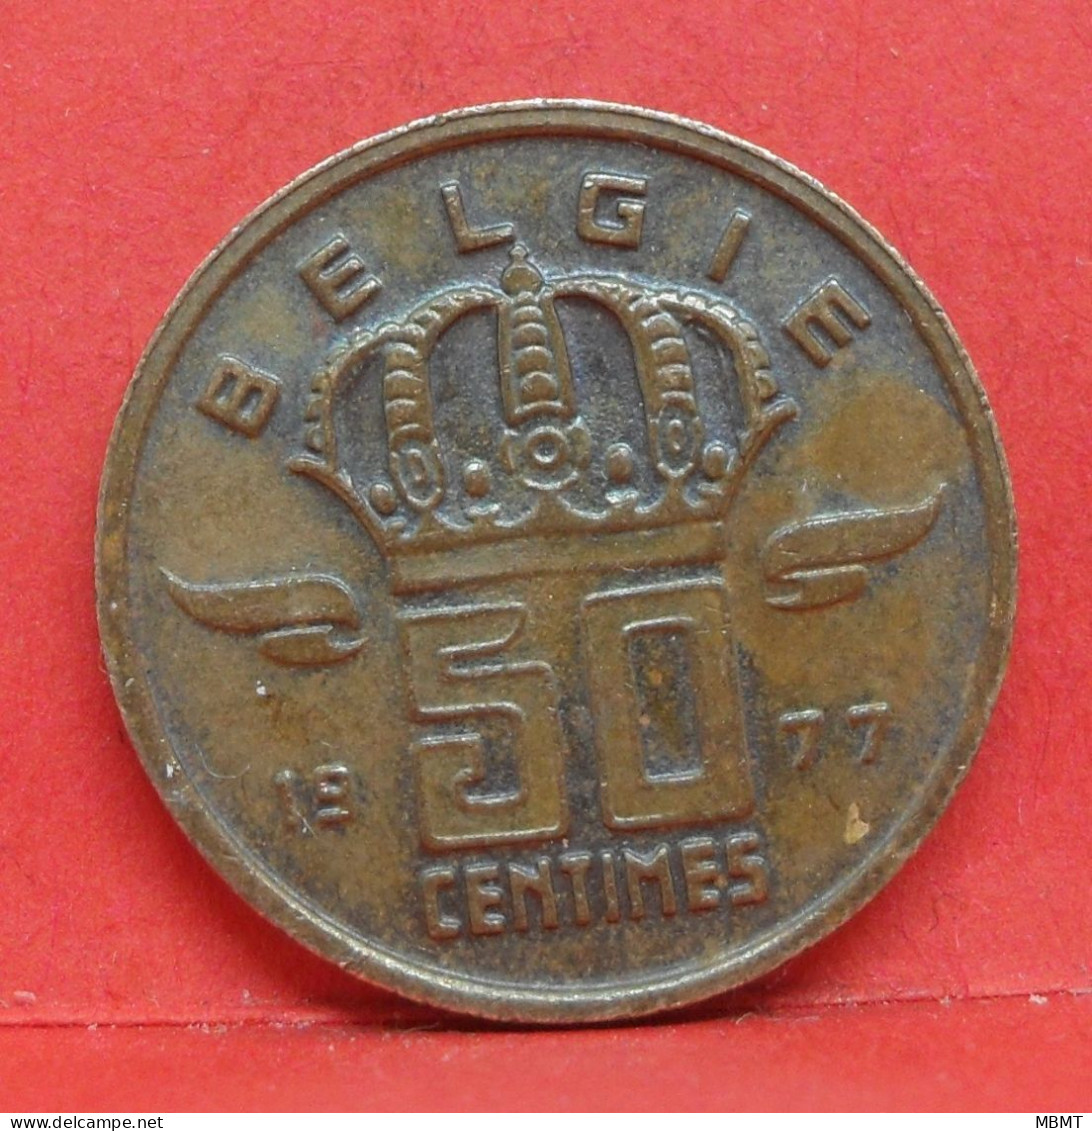 50 Centimes 1977 - TTB - Pièce Monnaie Belgie - Article N°1895 - 50 Cent